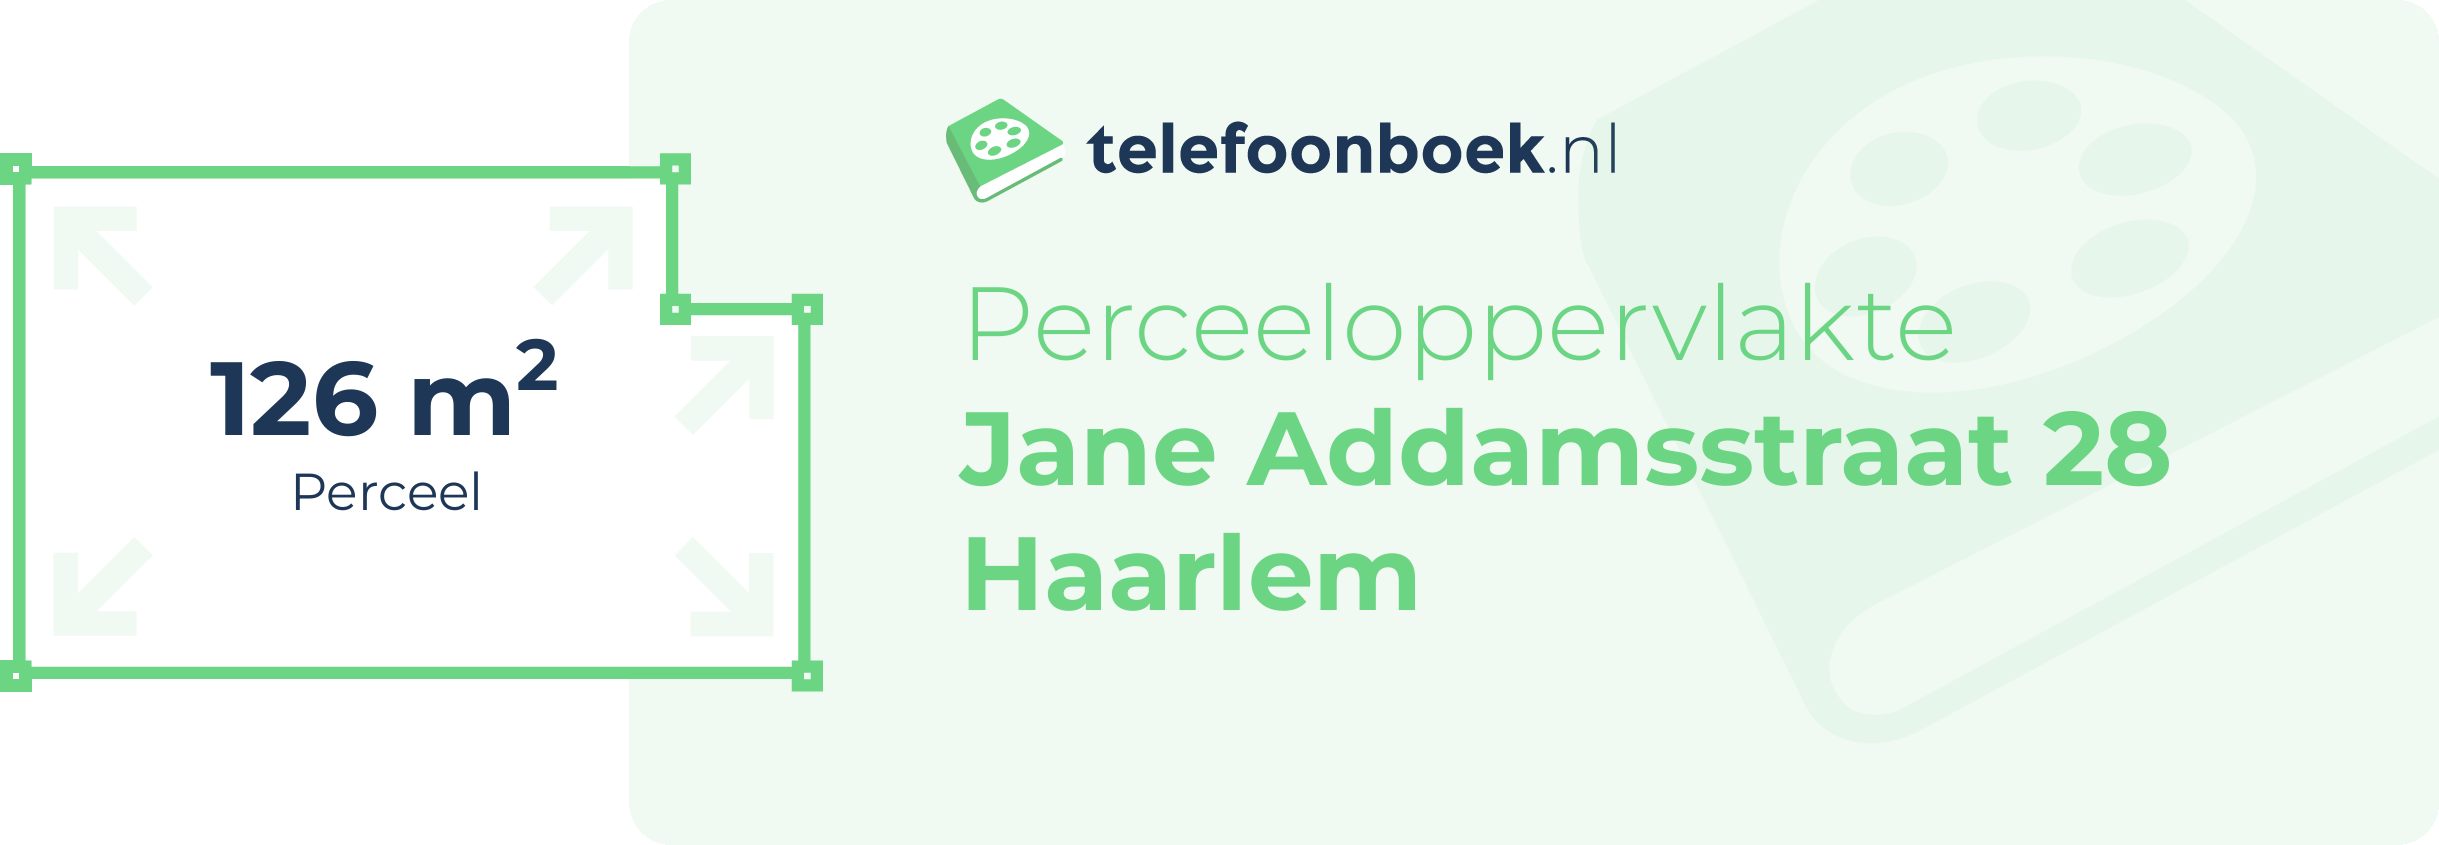 Perceeloppervlakte Jane Addamsstraat 28 Haarlem